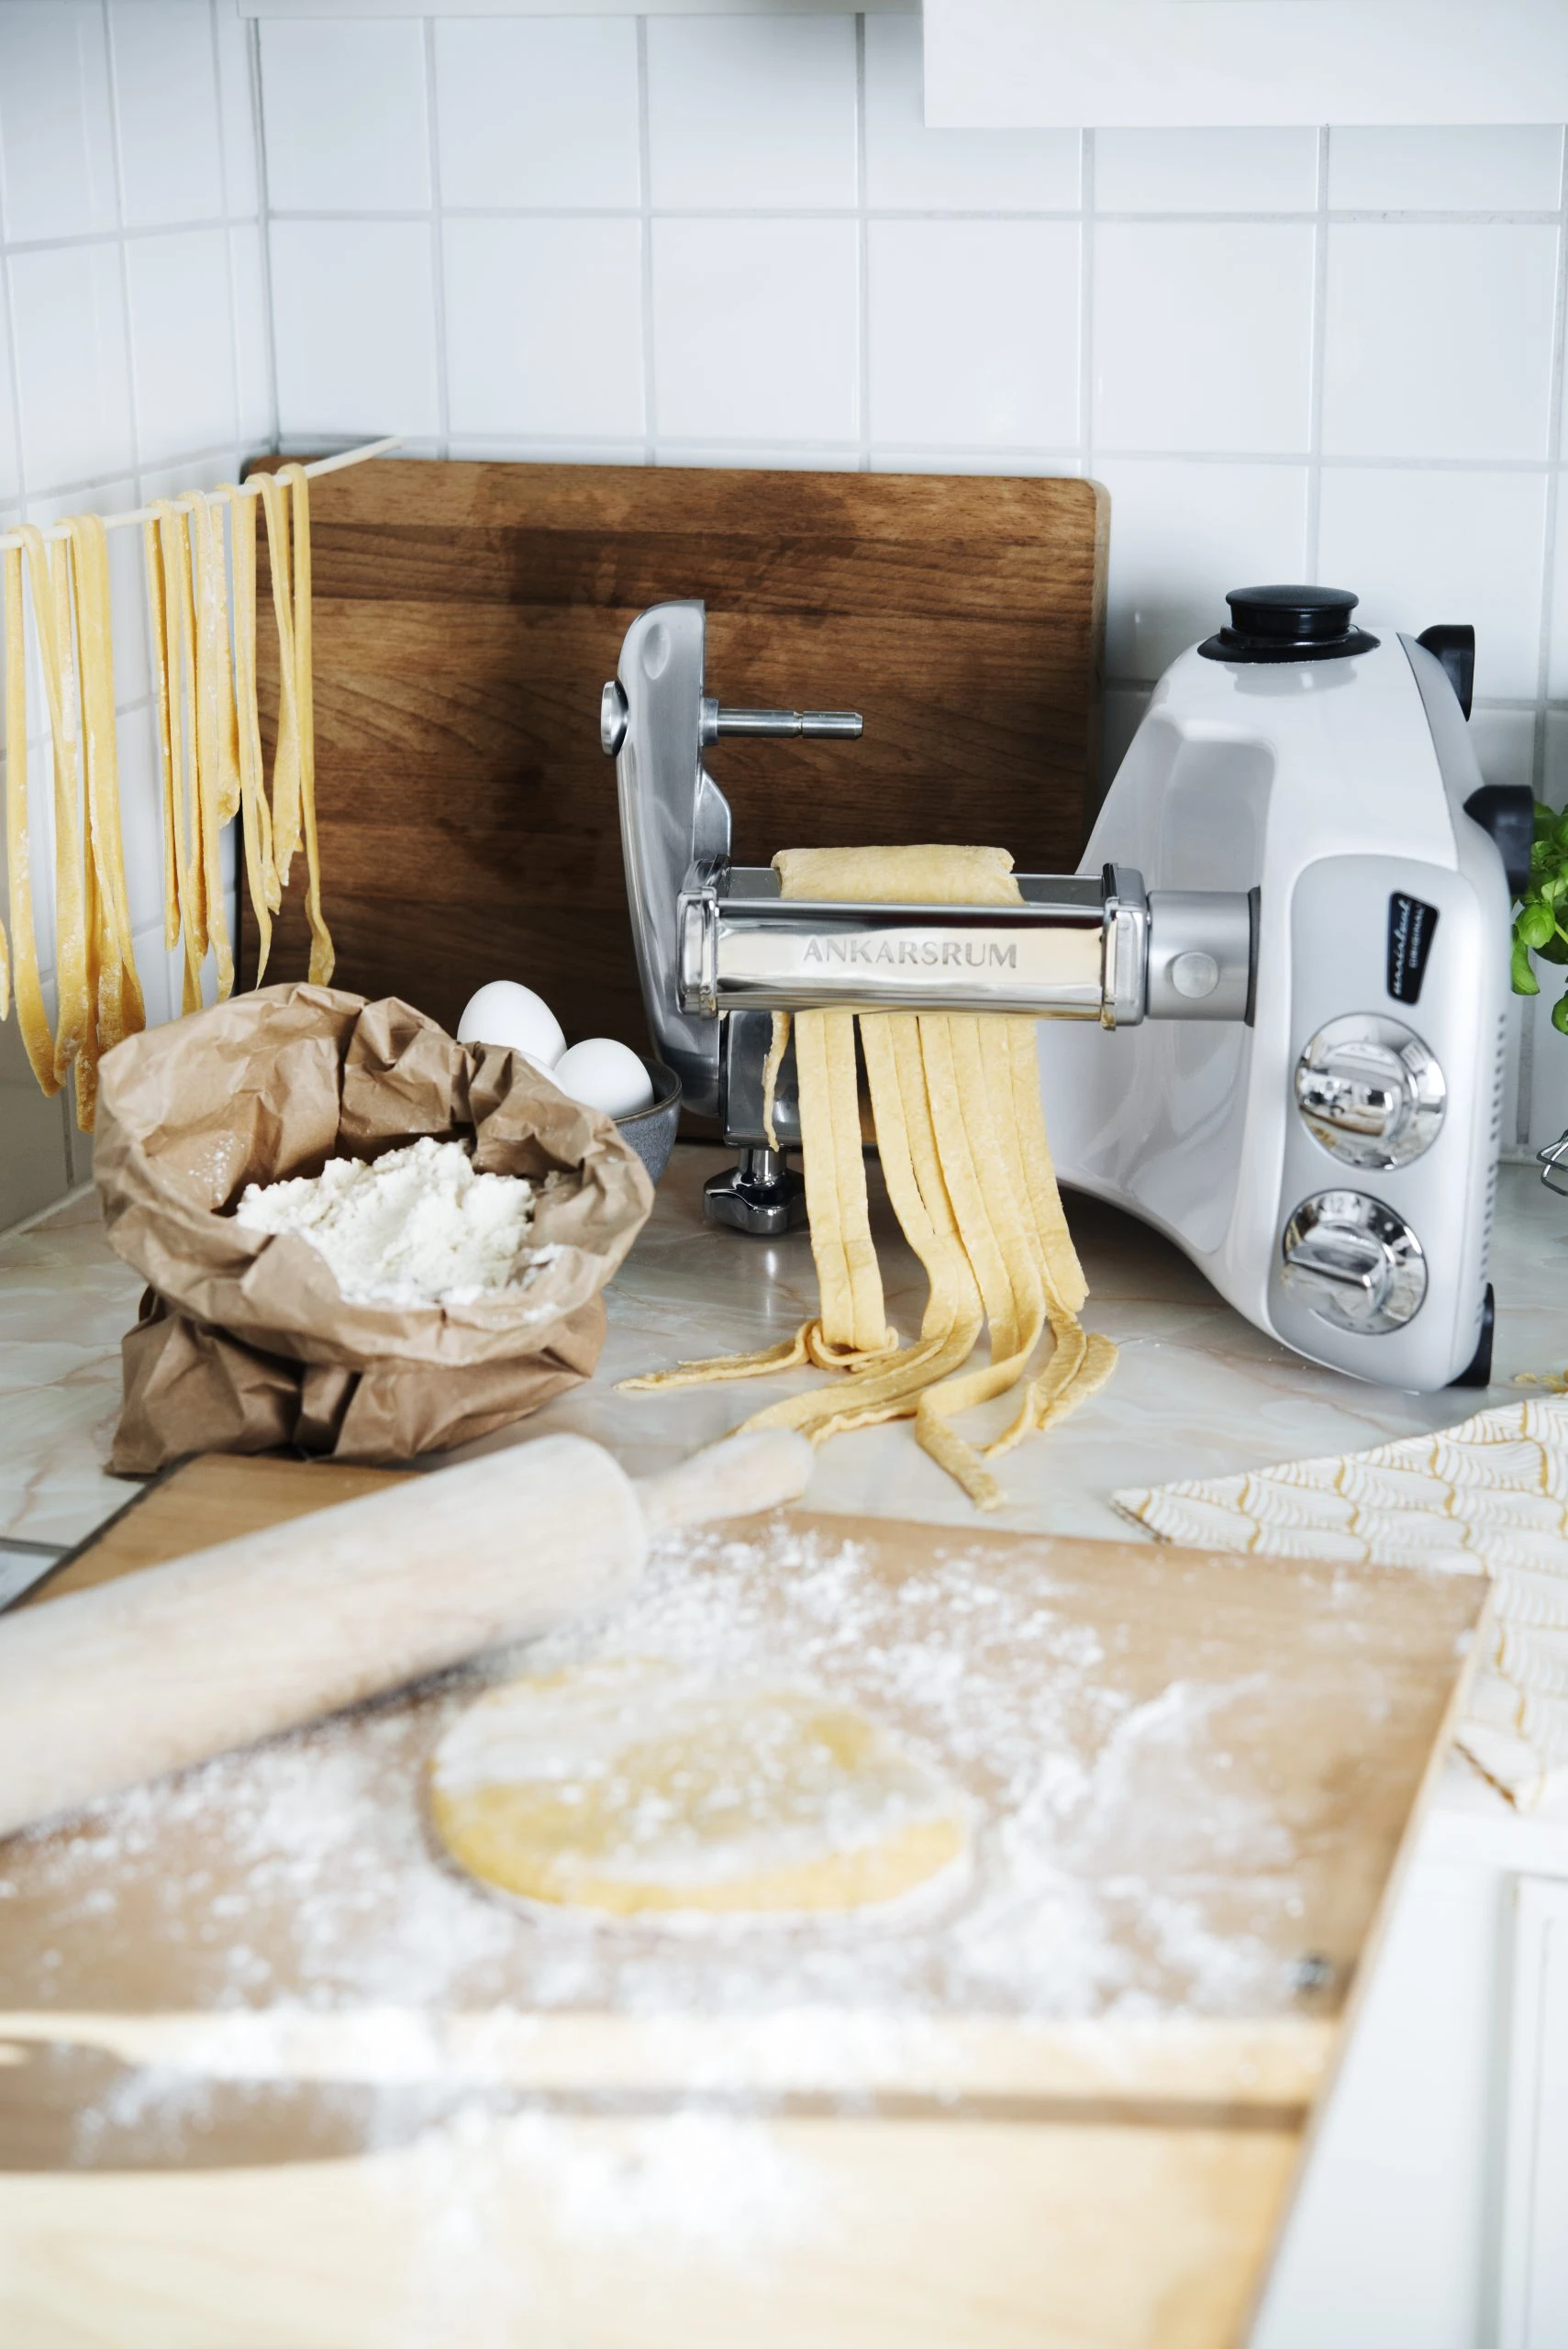 Ankarsrum Pasta/Lasagna Roller - MyToque